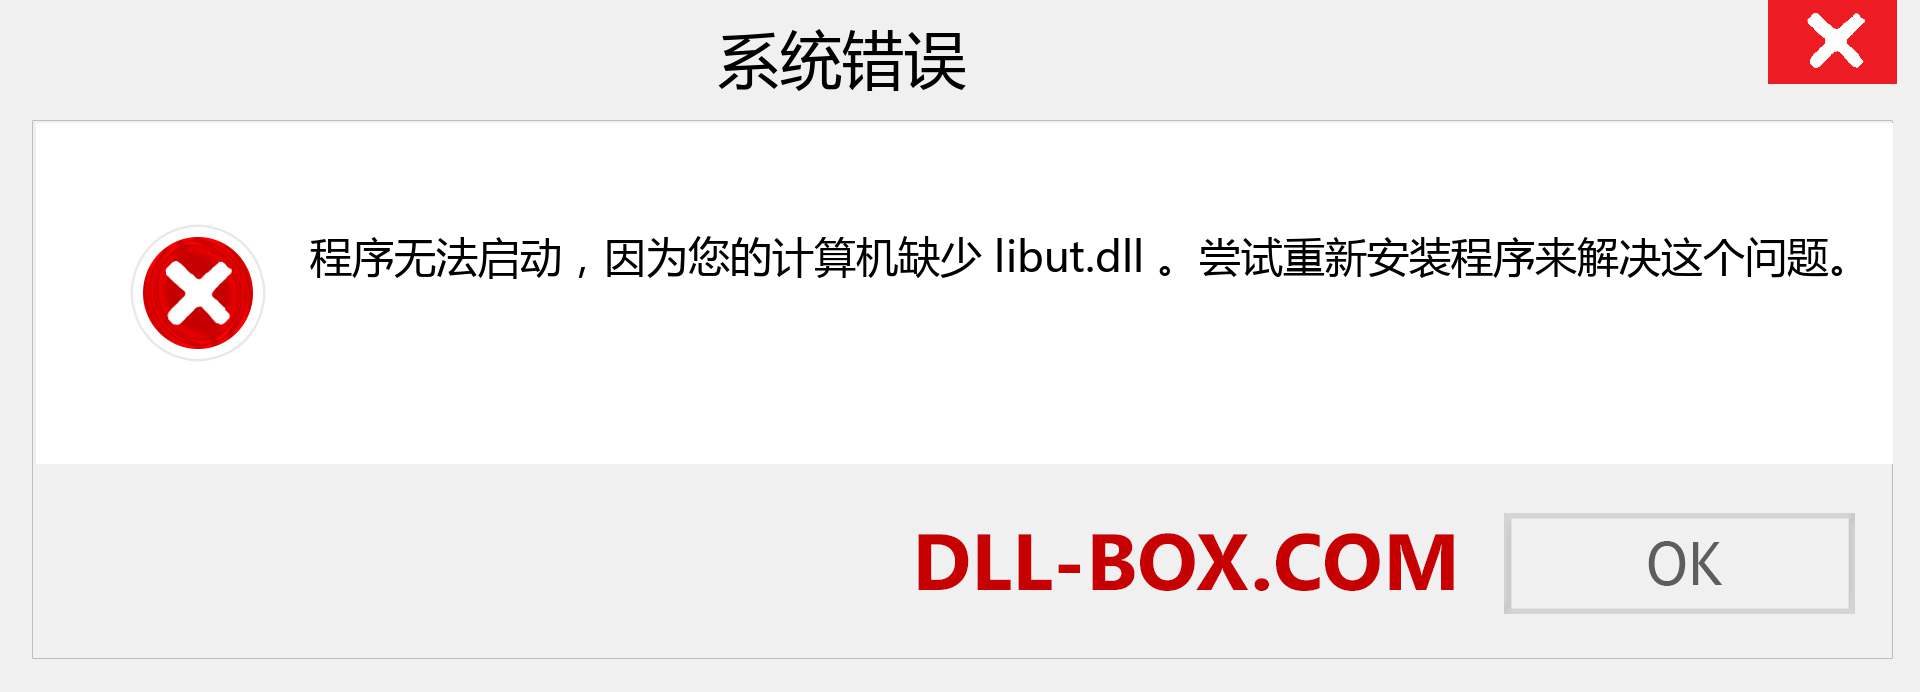 libut.dll 文件丢失？。 适用于 Windows 7、8、10 的下载 - 修复 Windows、照片、图像上的 libut dll 丢失错误